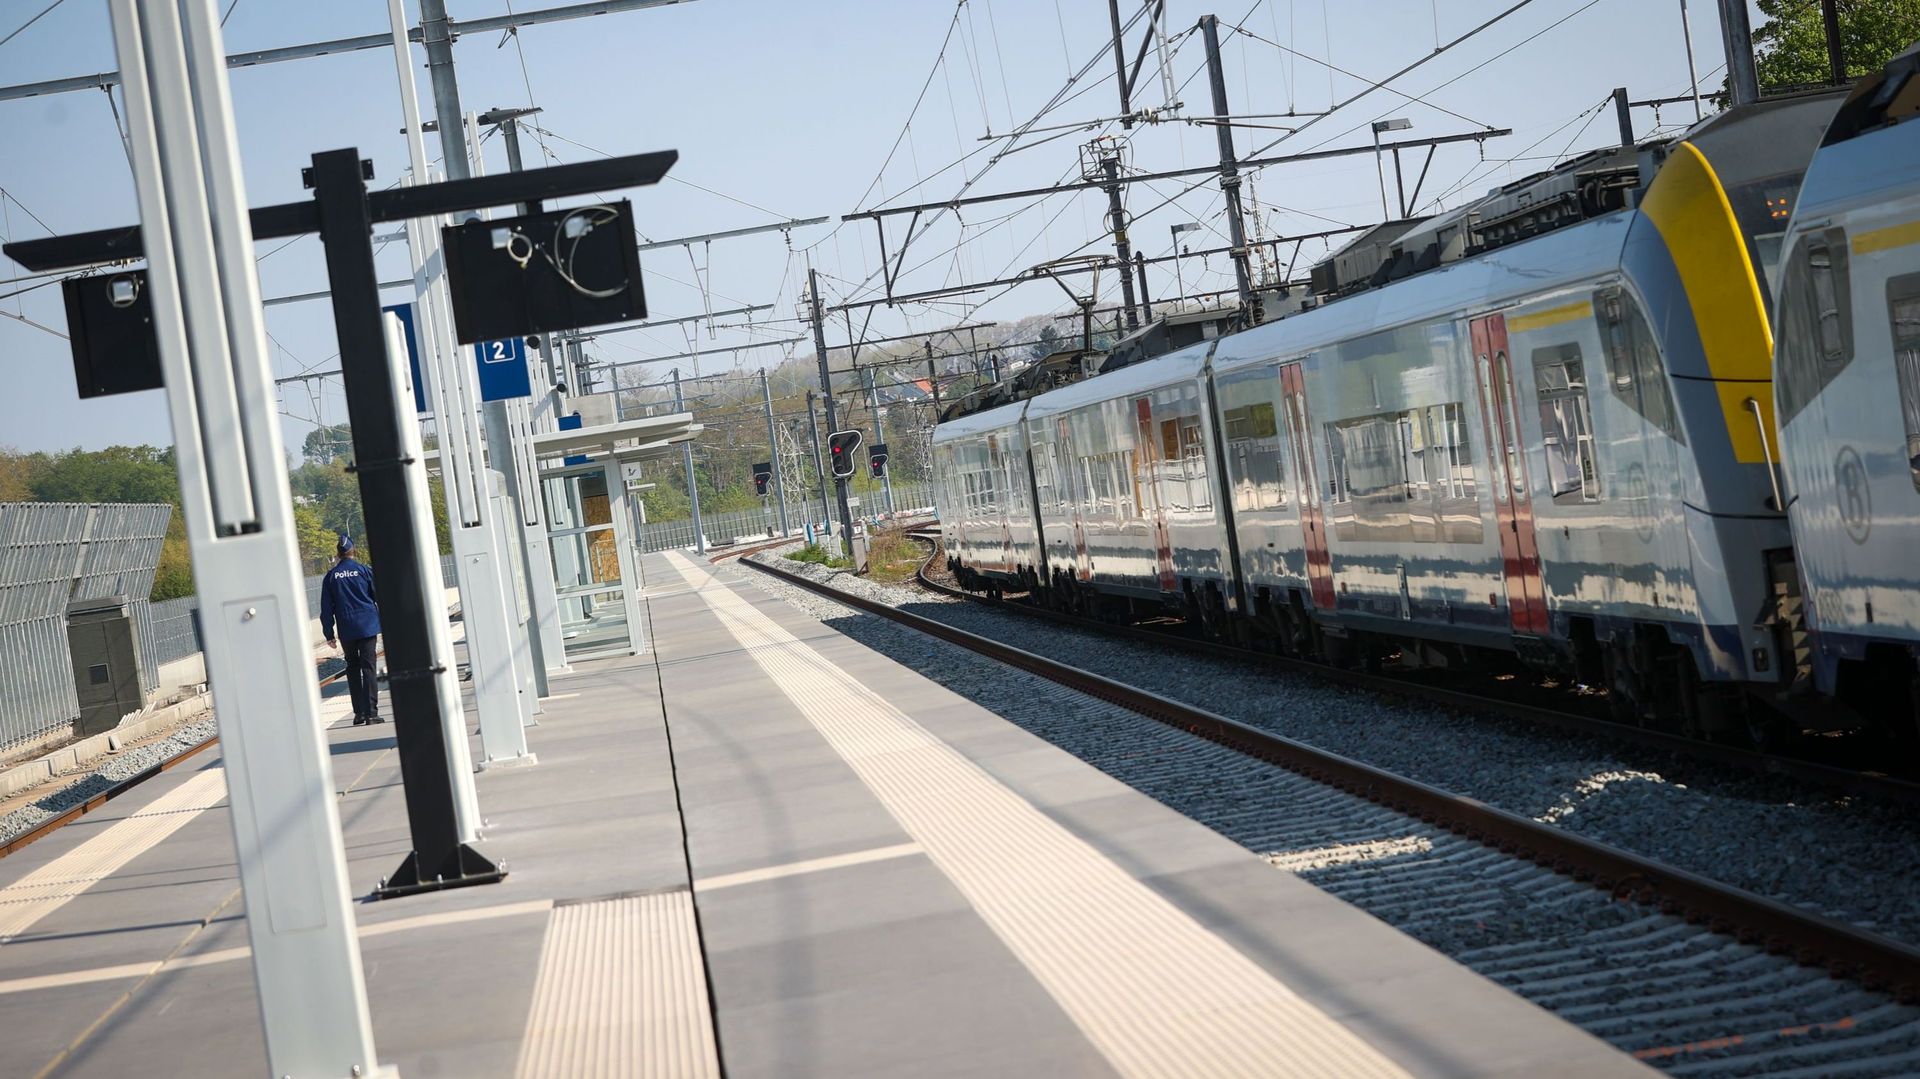 Face à la grève du rail annoncée le 5 octobre, le gouvernement réaffirme que le train sera "l’épine dorsale de la mobilité".